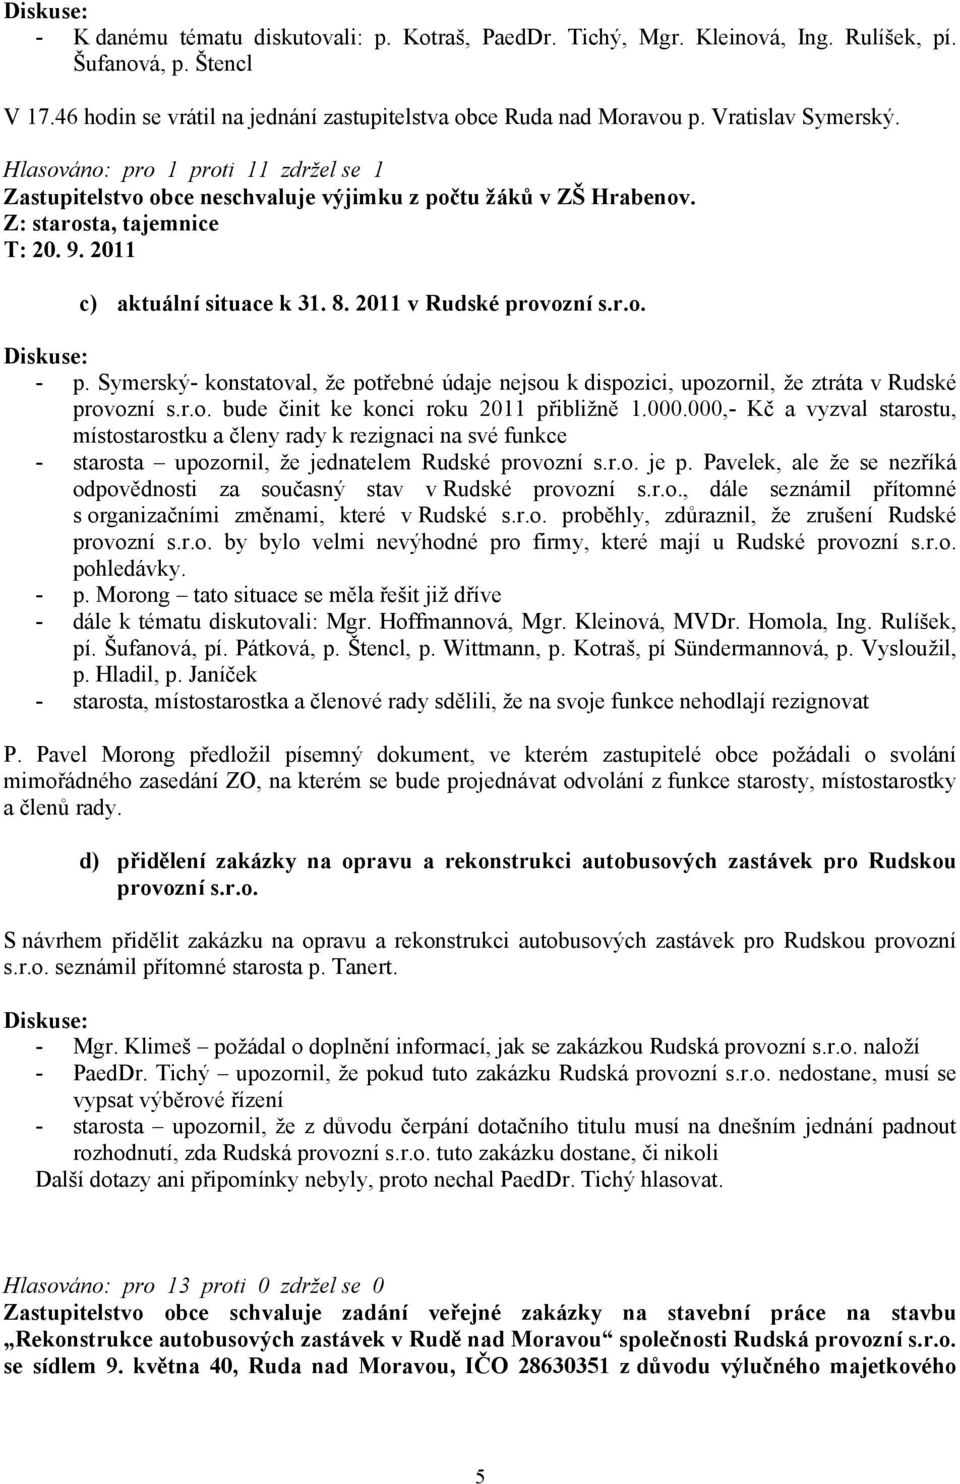 2011 v Rudské provozní s.r.o. - p. Symerský- konstatoval, že potřebné údaje nejsou k dispozici, upozornil, že ztráta v Rudské provozní s.r.o. bude činit ke konci roku 2011 přibližně 1.000.